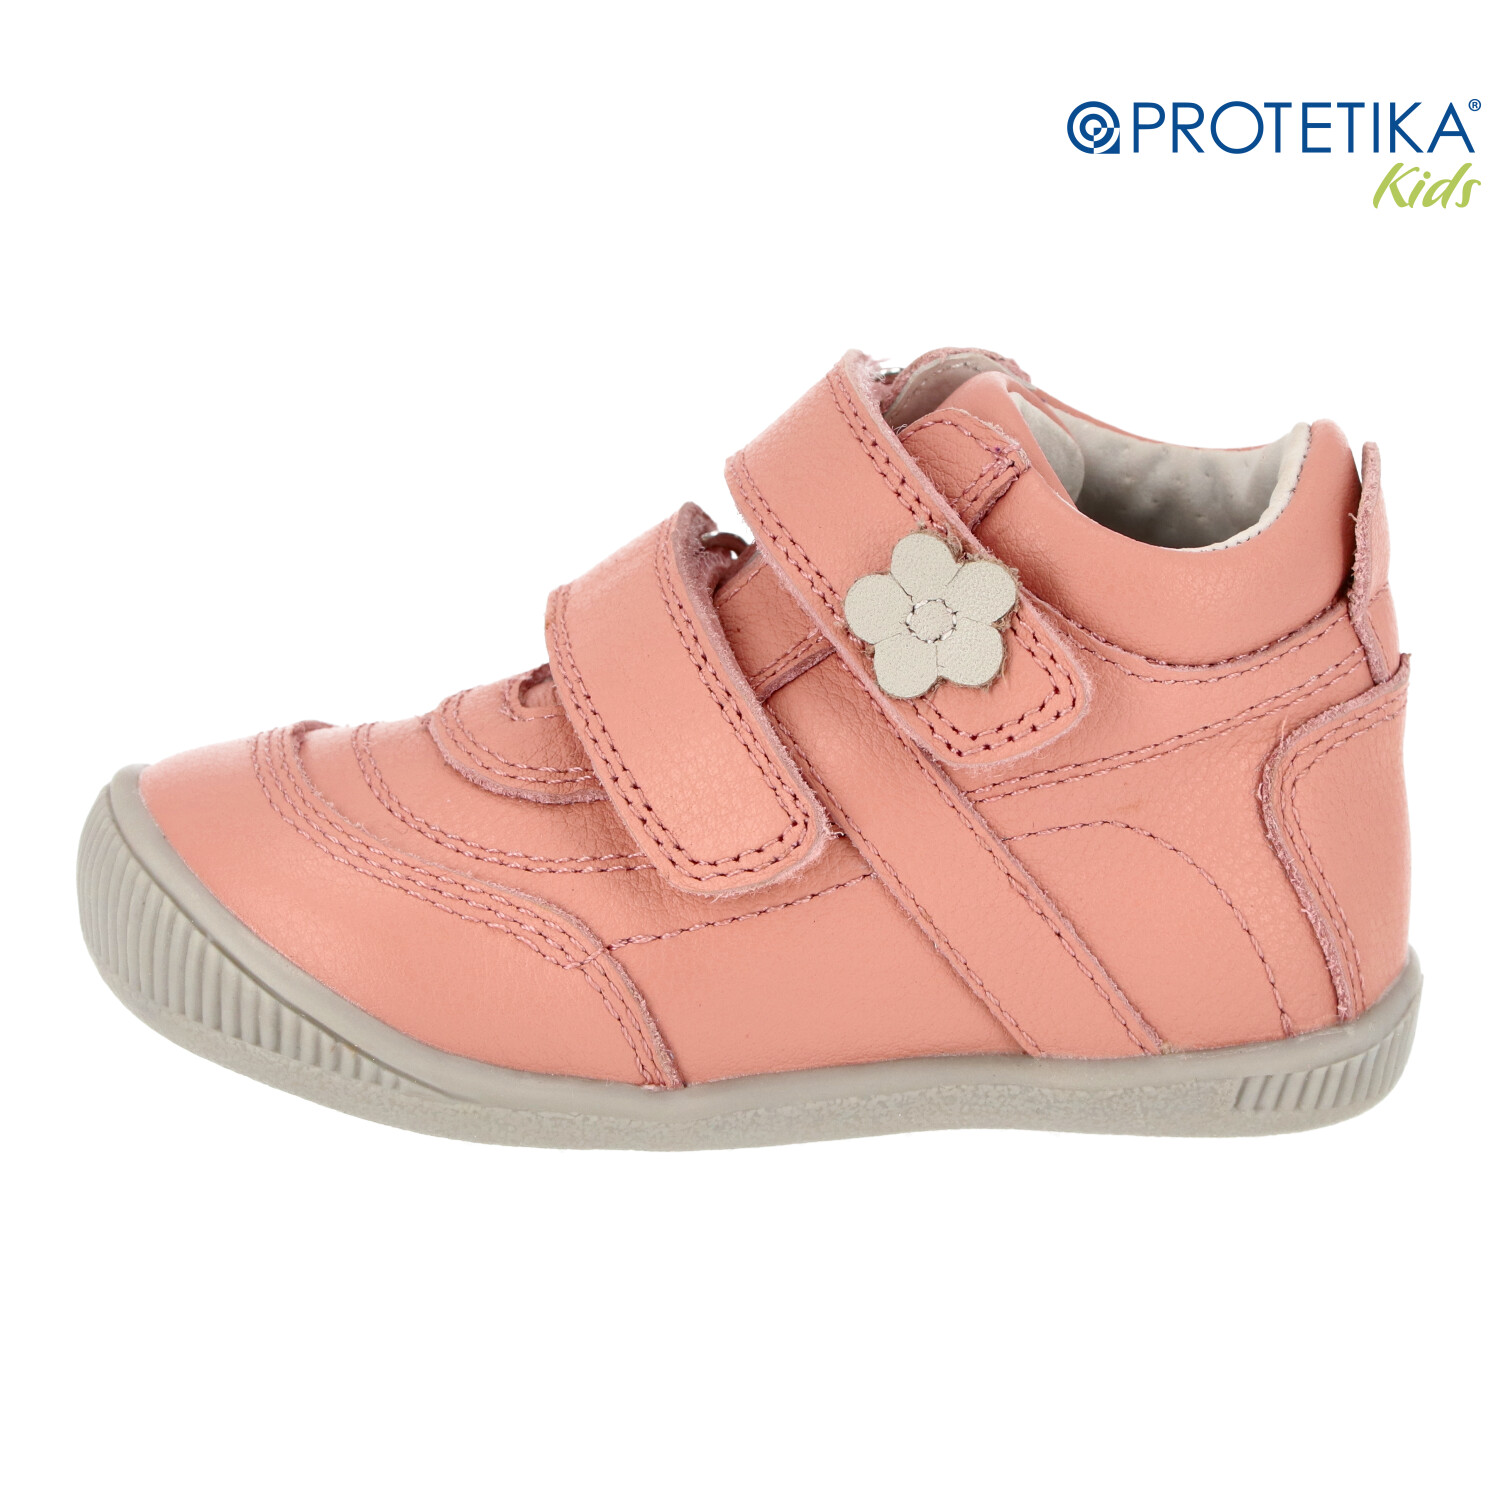 Protetika - topánky AGNES pink